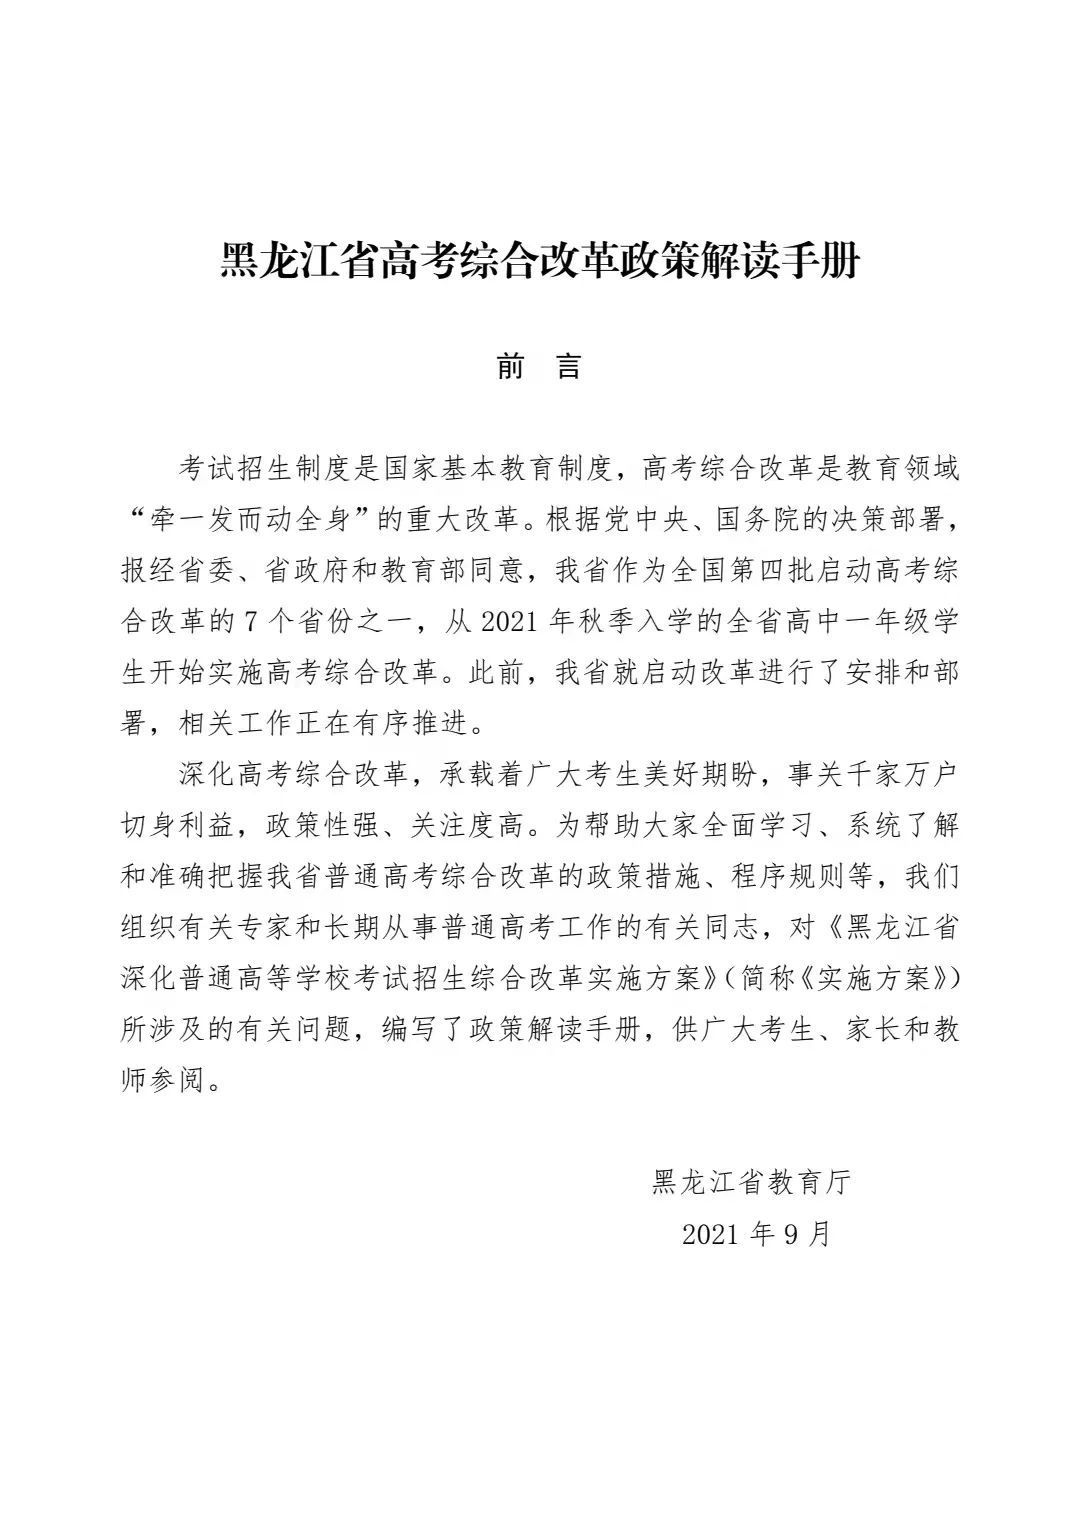 50問答讓您了解黑龍江省高考綜合改革